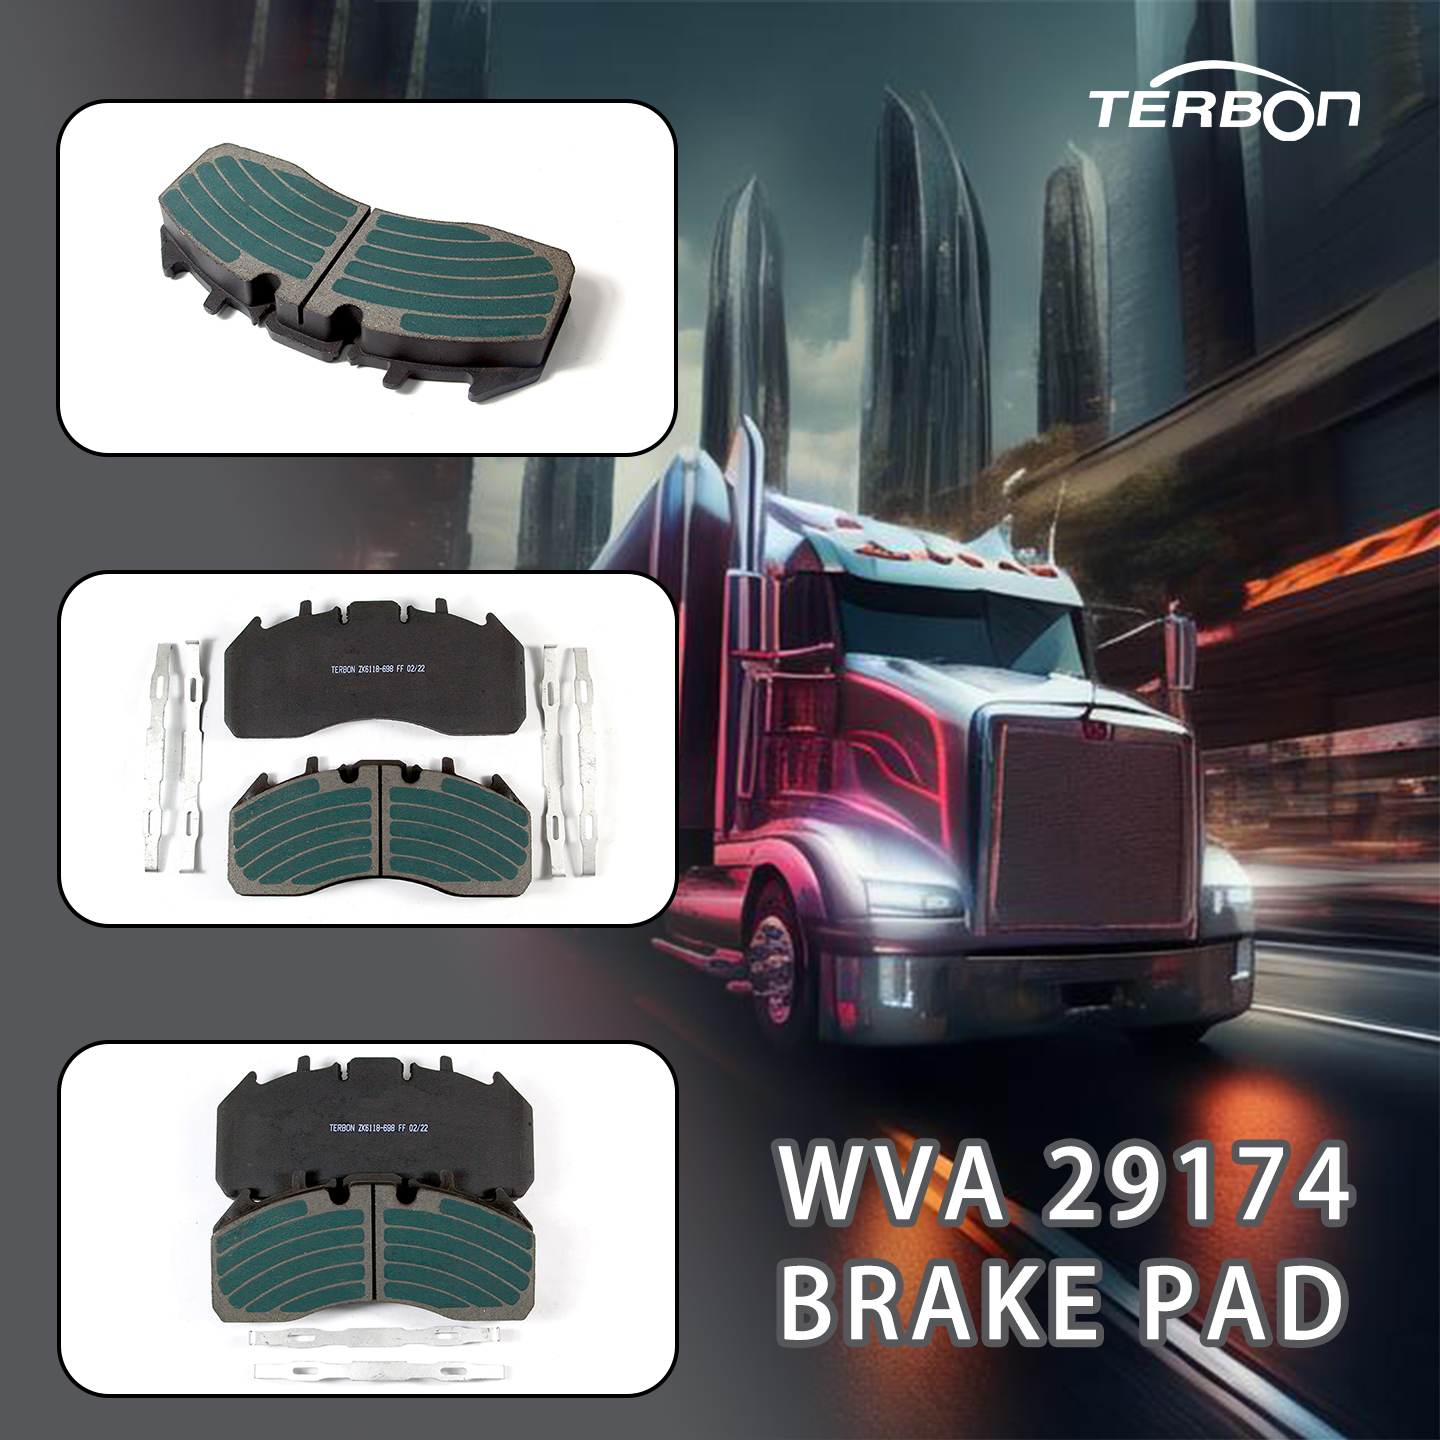 Նոր արտադրանքի թողարկում՝ TERBON բարձրորակ WVA 29174 արգելակման բարձիկներ ձեր ծանր բեռնատար մեքենաների համար